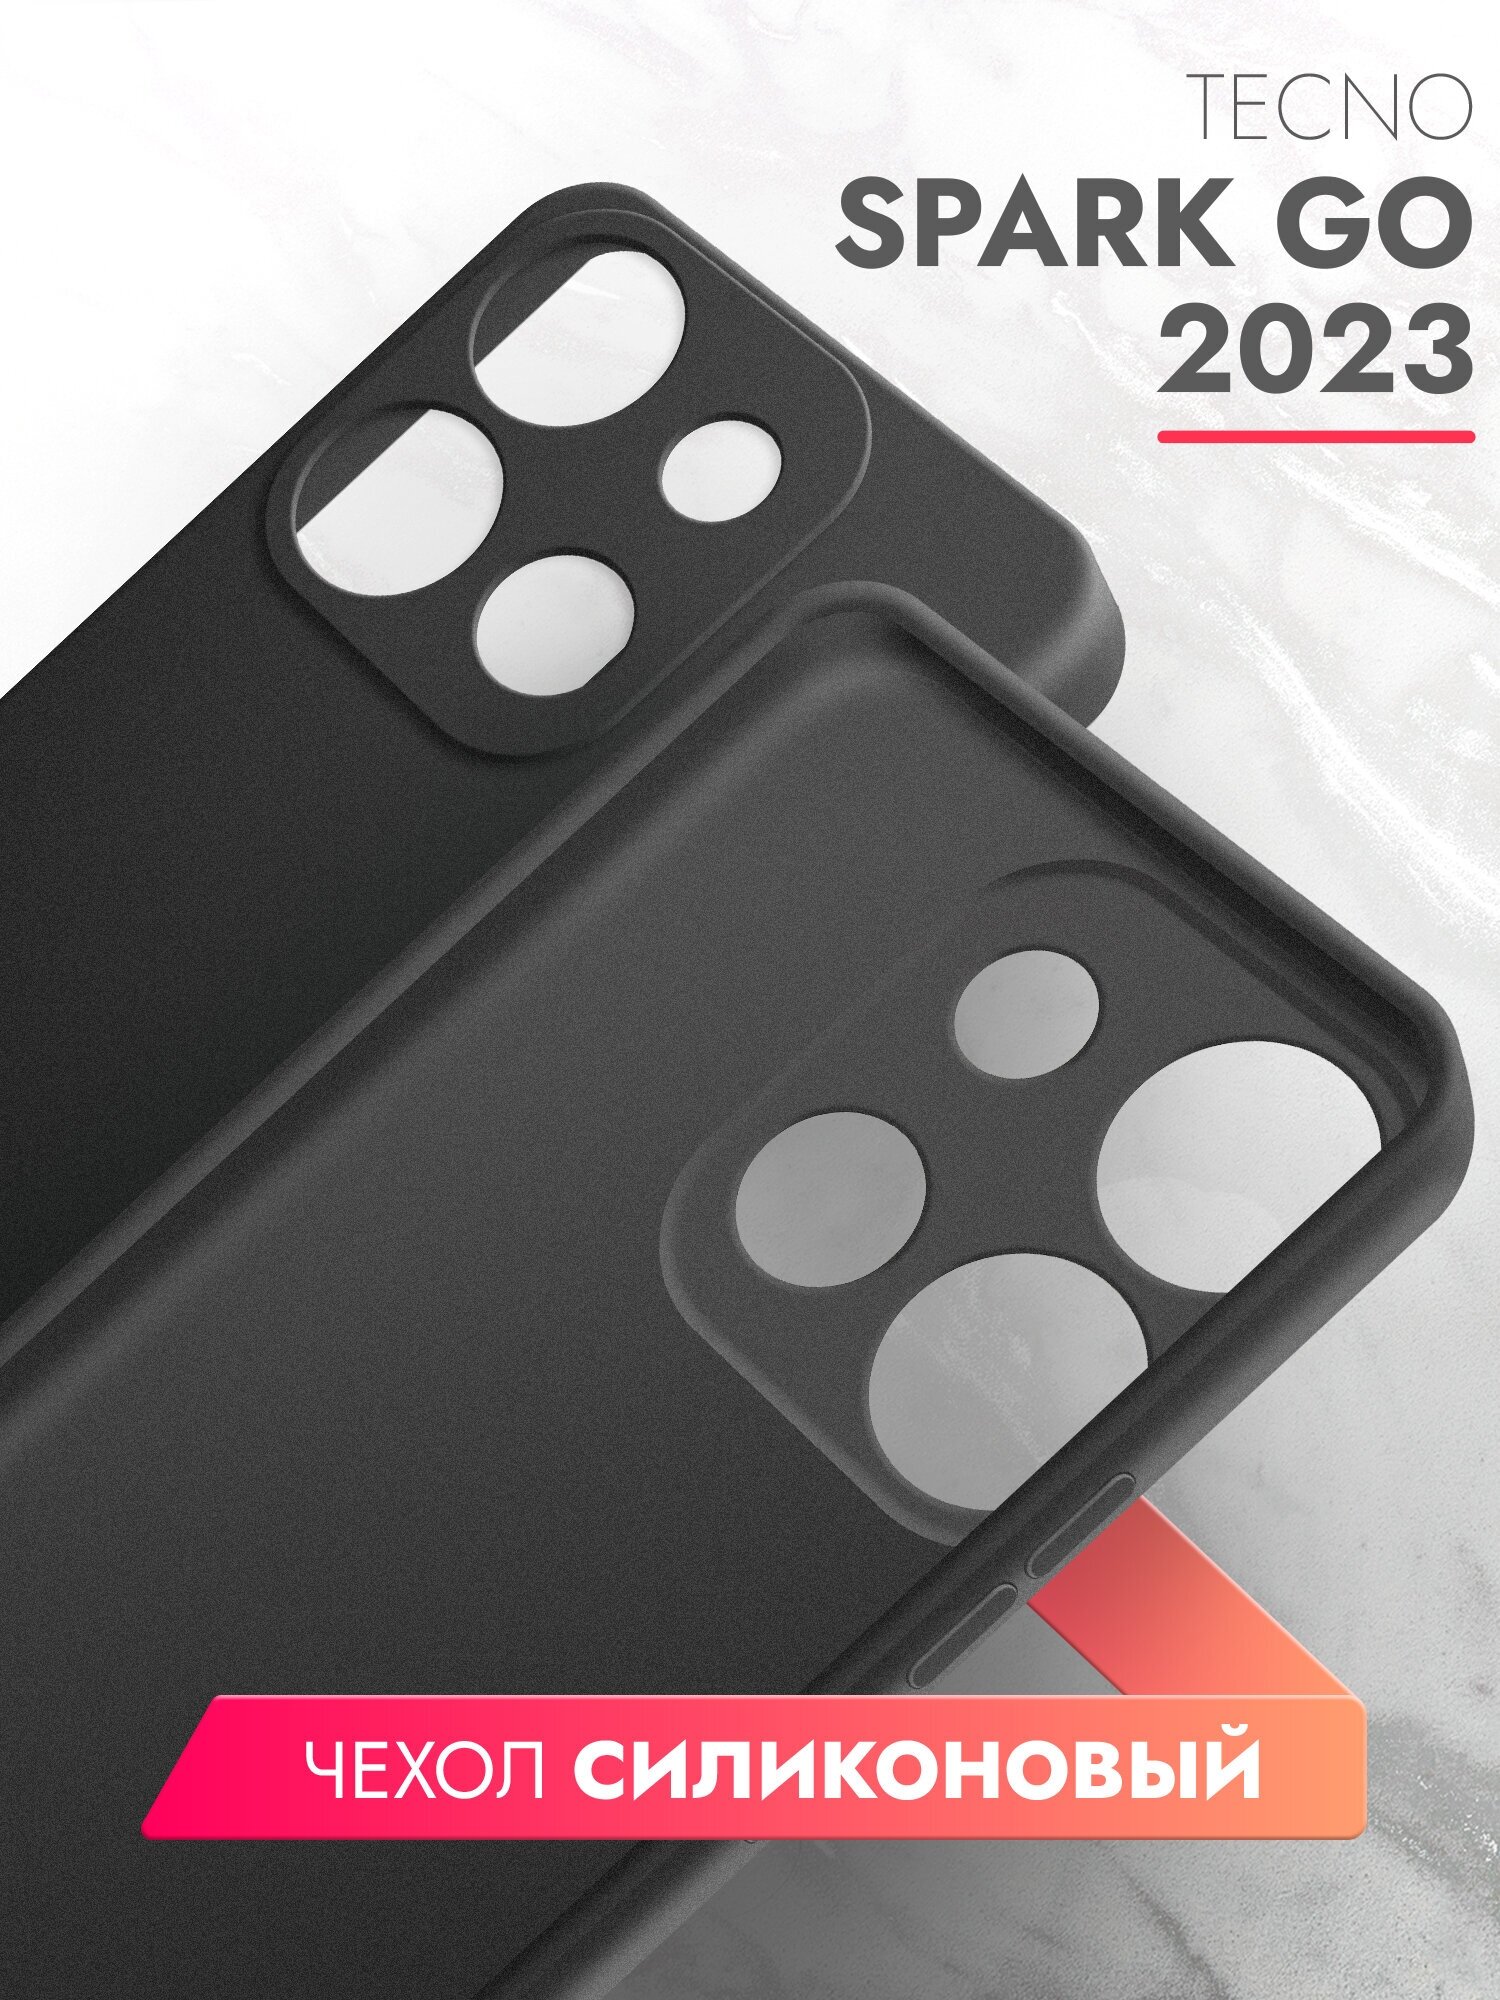 Чехол на Tecno Spark Go 2023/ Infinix Smart 7 (Техно Спарк Гоу 2023 / Инфиникс смарт 7) черный матовый силиконовый с защитой камеры, Brozo